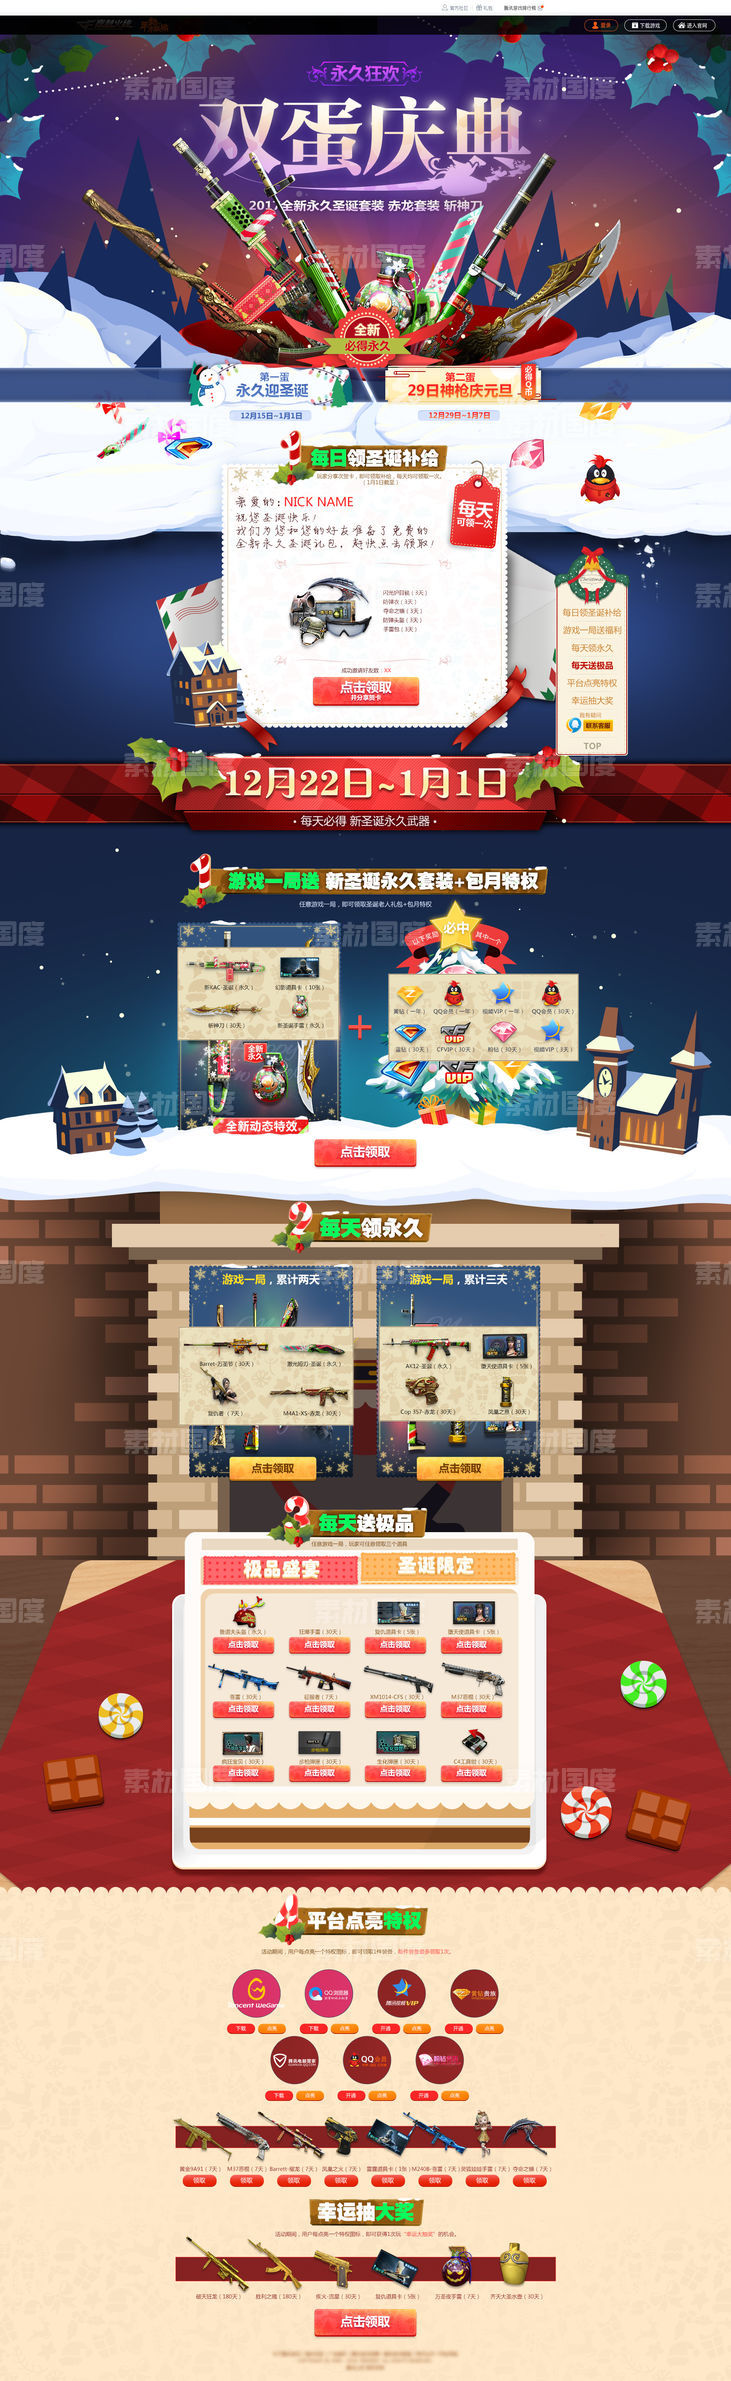 游戏圣诞庆典活动专题页